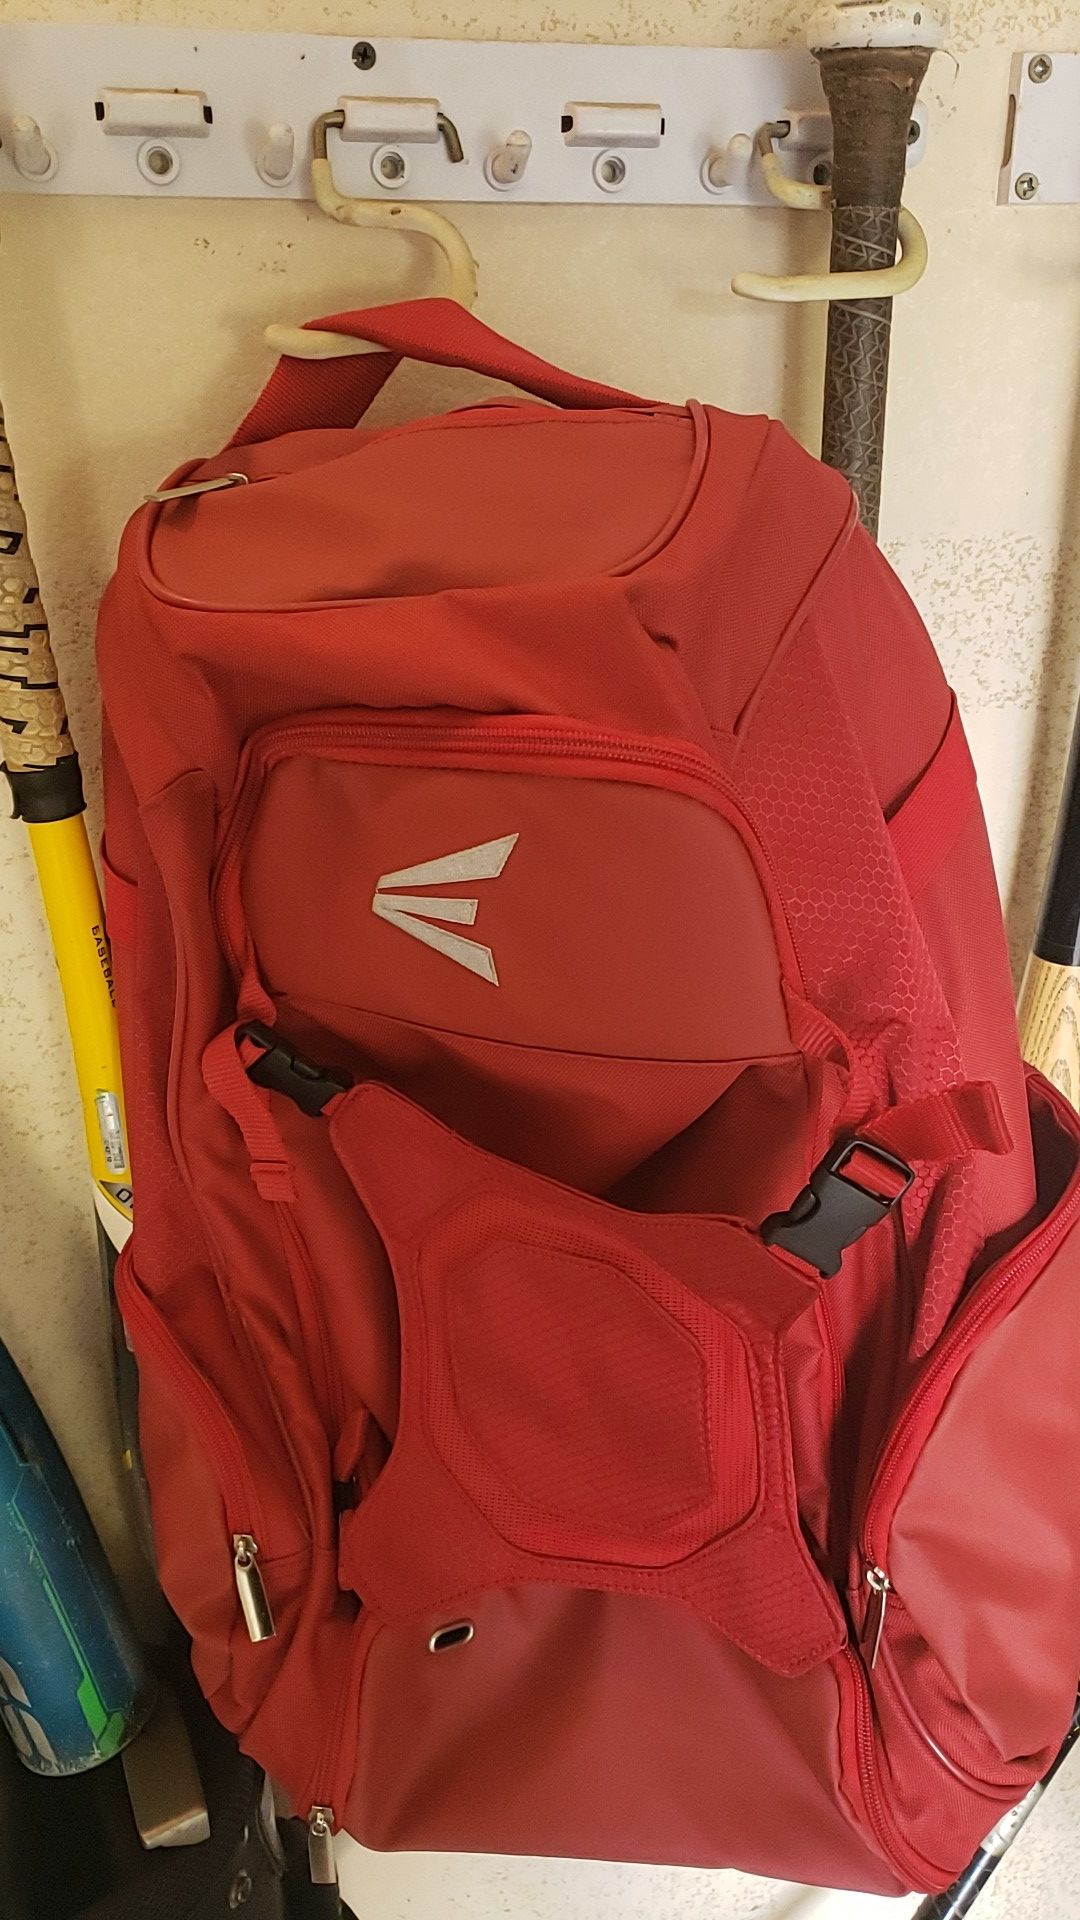 Brand new easton baseball backpack